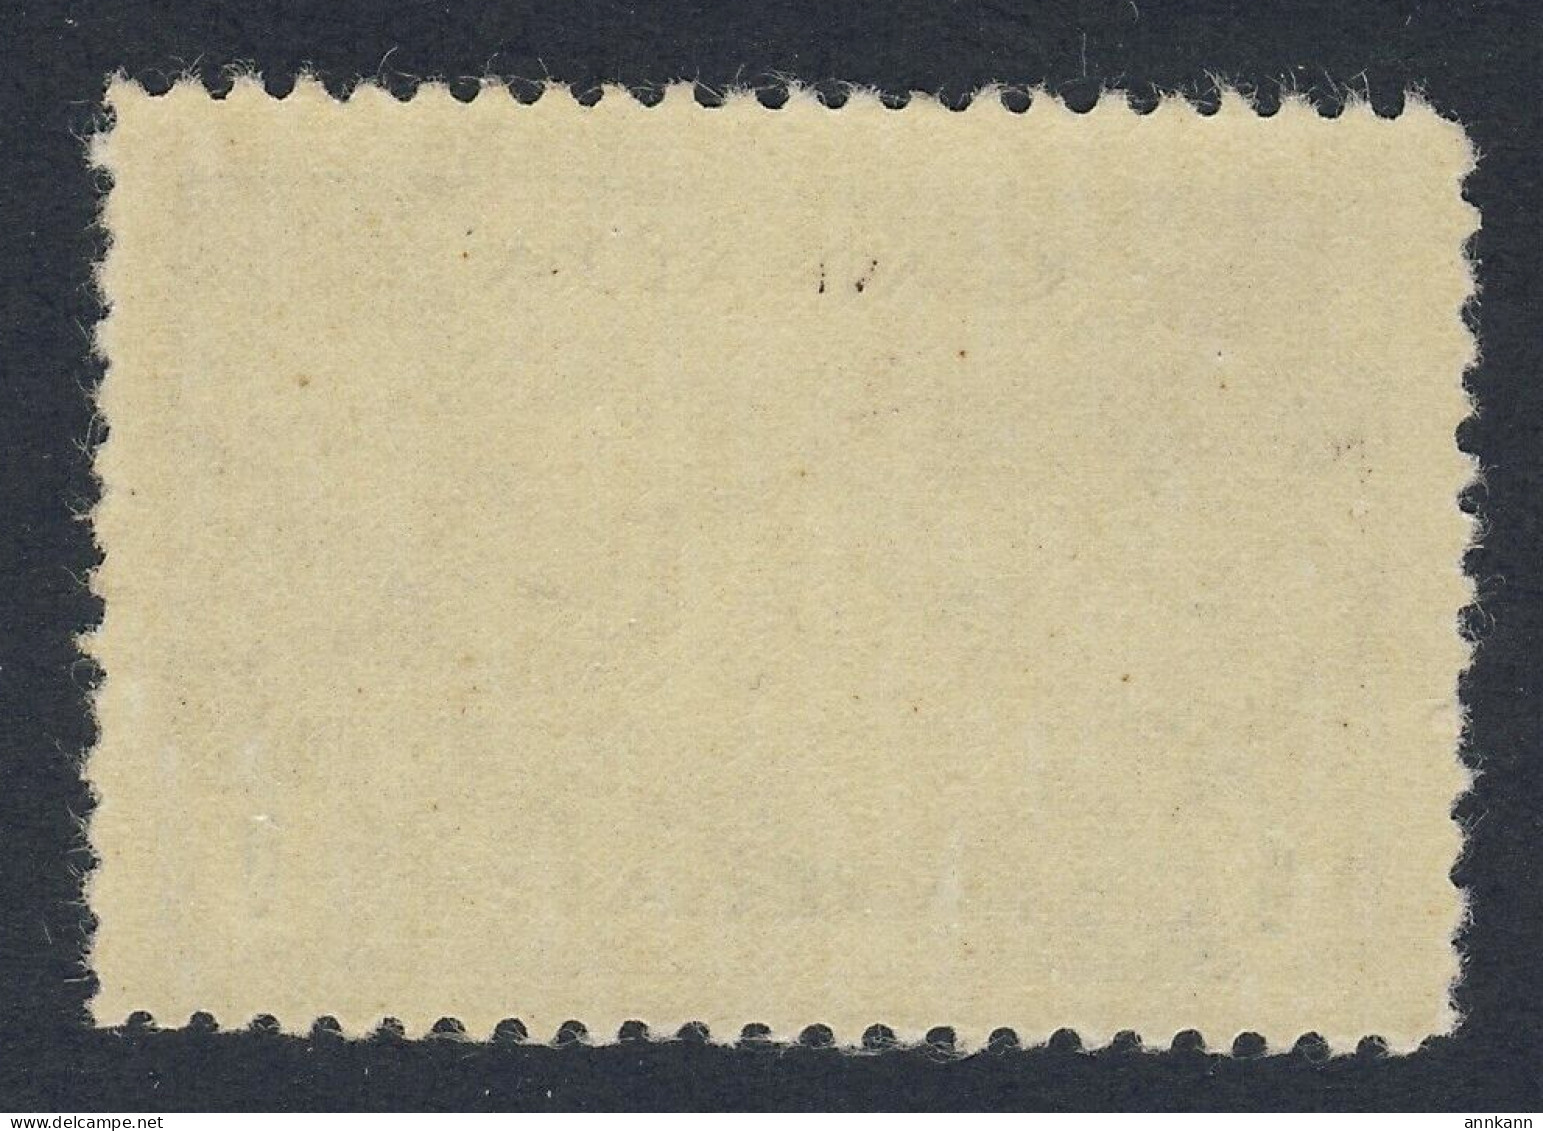 Canada $1.00 WW2 Stamp #262 - $1.00 Destroyer Battleship MNH VF GV= $120.00 - Ungebraucht